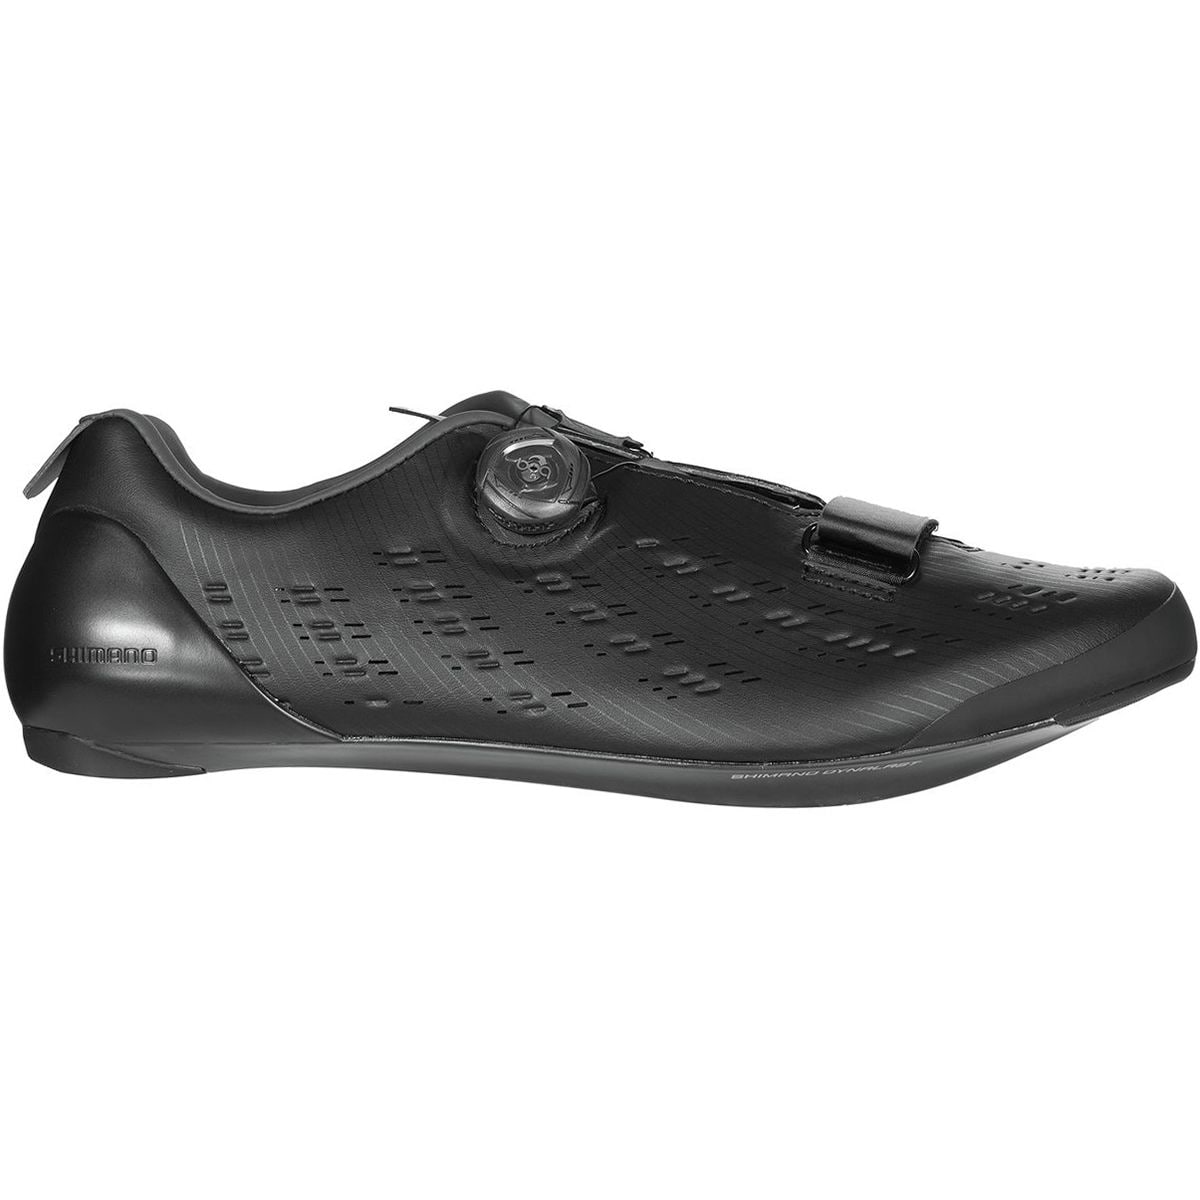 Shimano SH-RP9 Wide Cycling Shoe - Men's